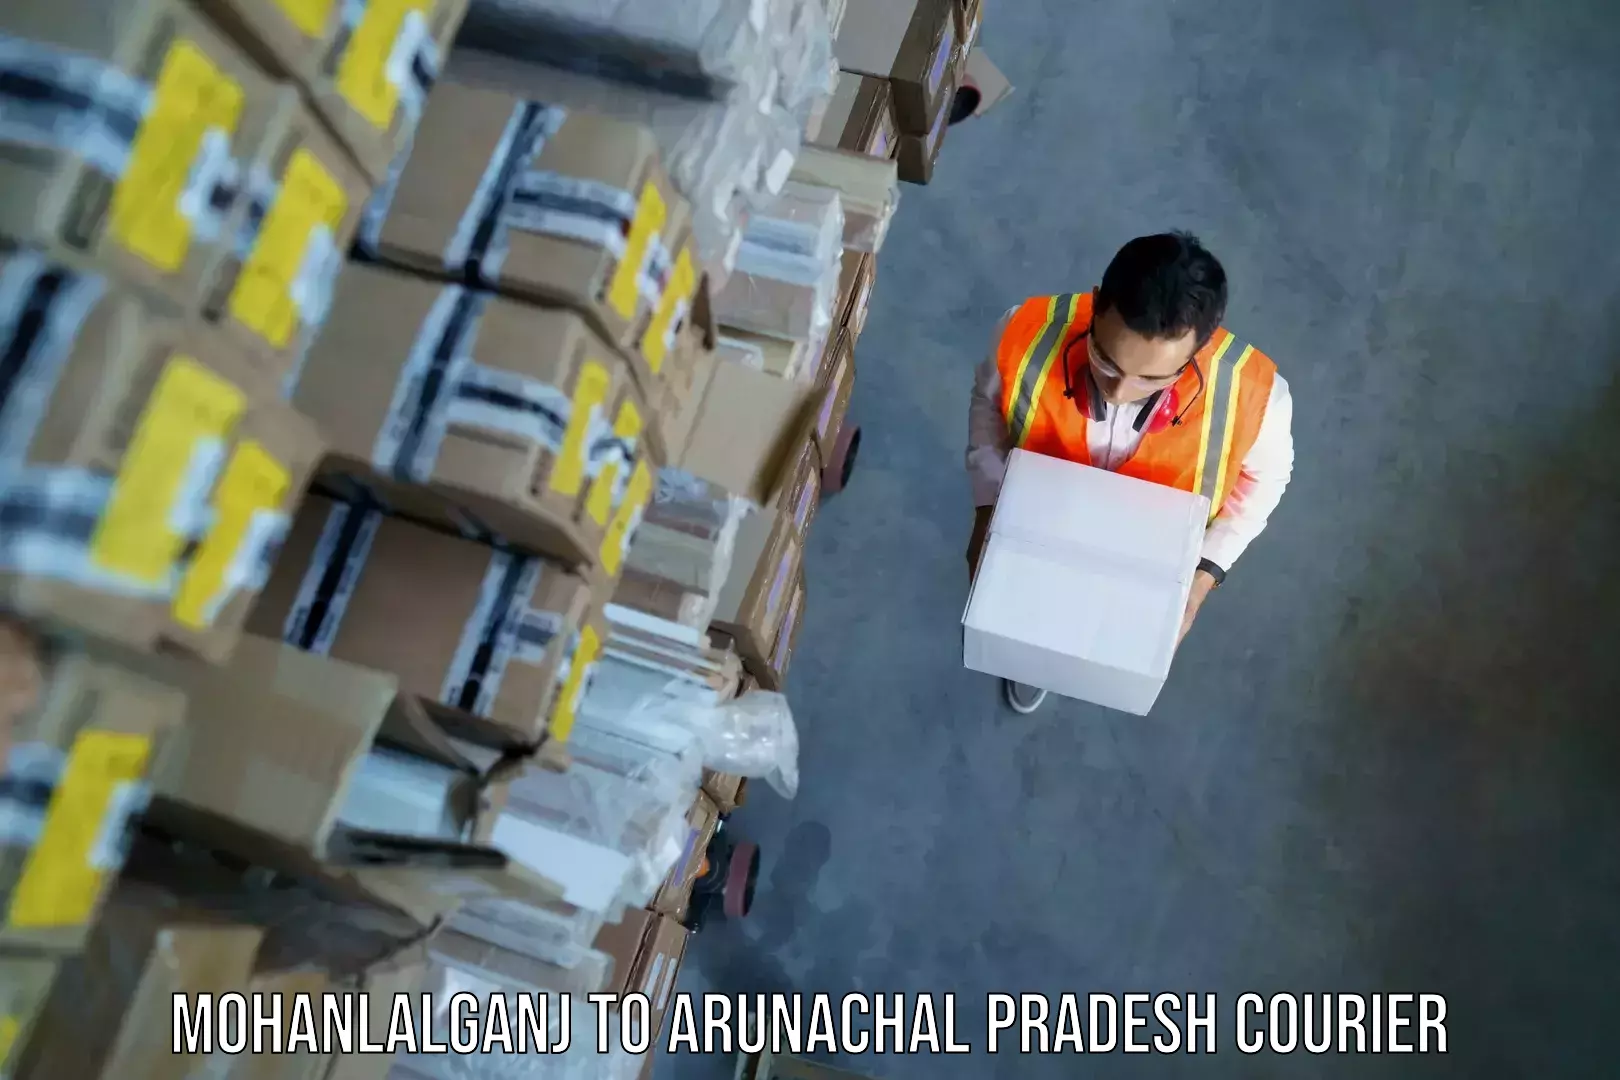 Luggage delivery app Mohanlalganj to Arunachal Pradesh